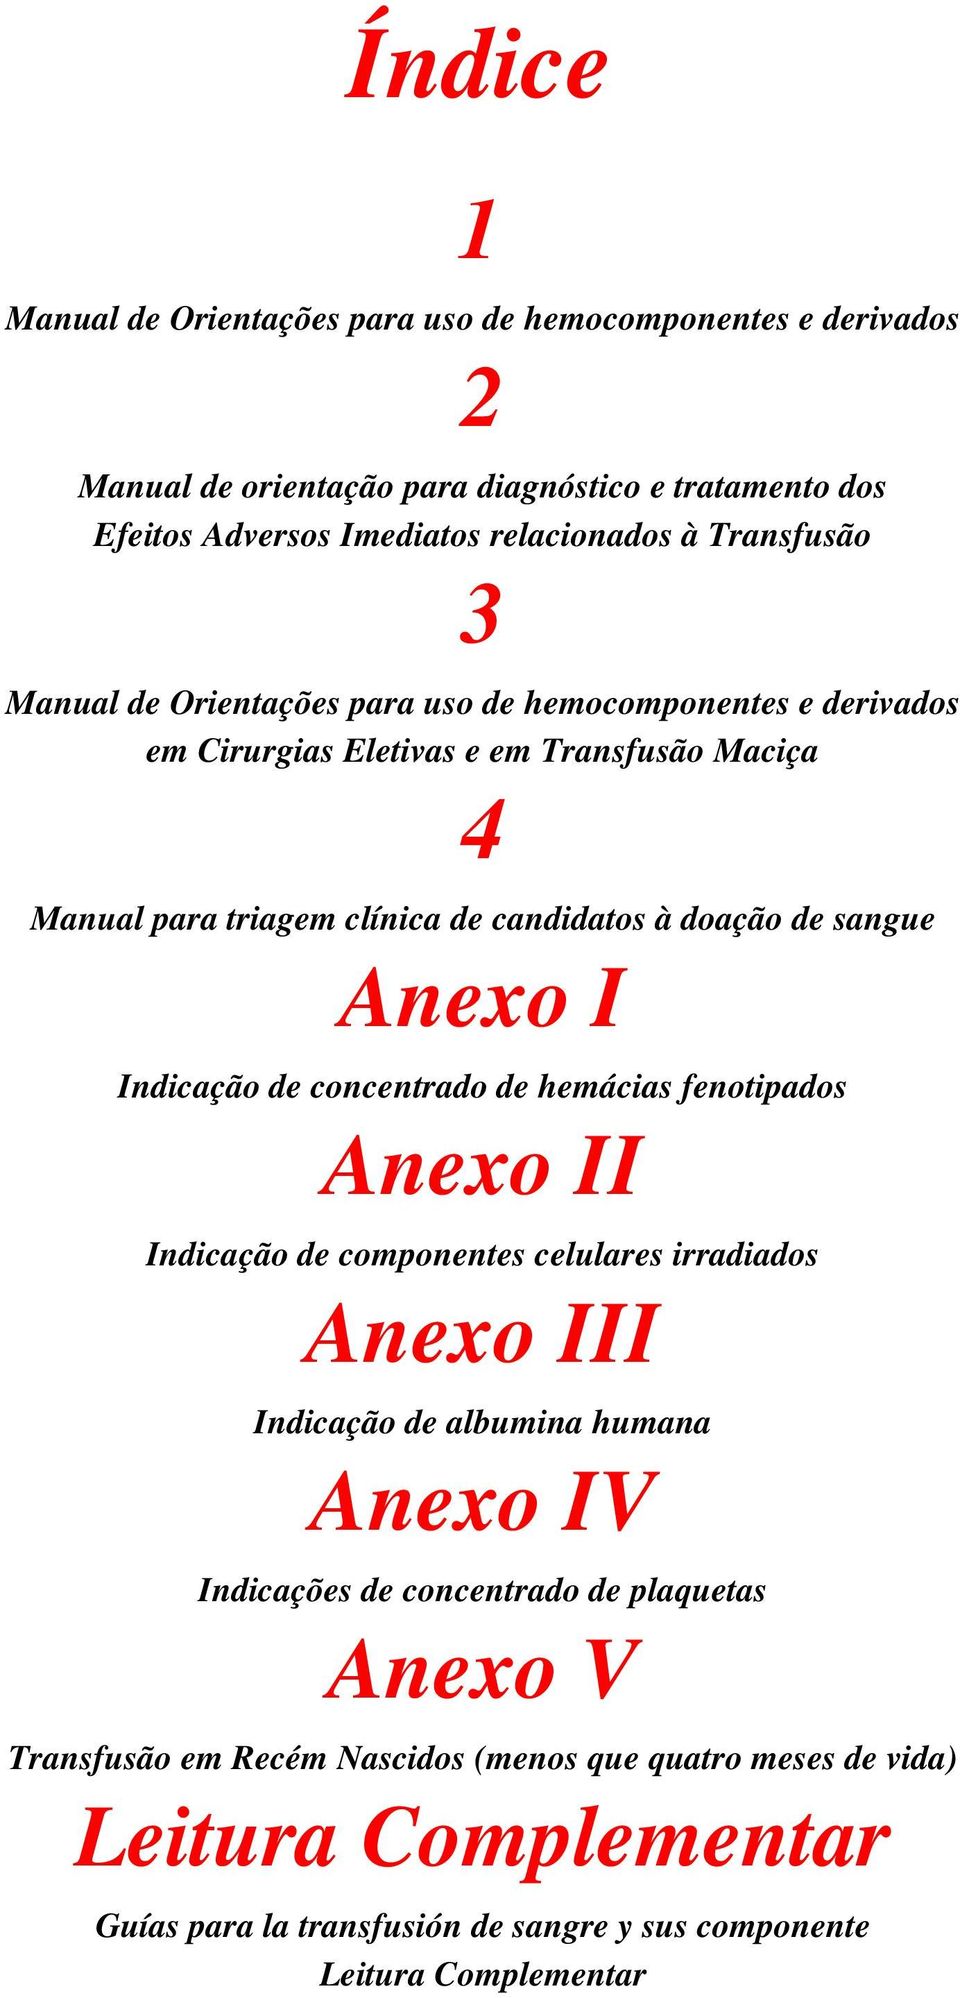 sangue Anexo I Indicação de concentrado de hemácias fenotipados Anexo II Indicação de componentes celulares irradiados Anexo III Indicação de albumina humana Anexo IV Indicações